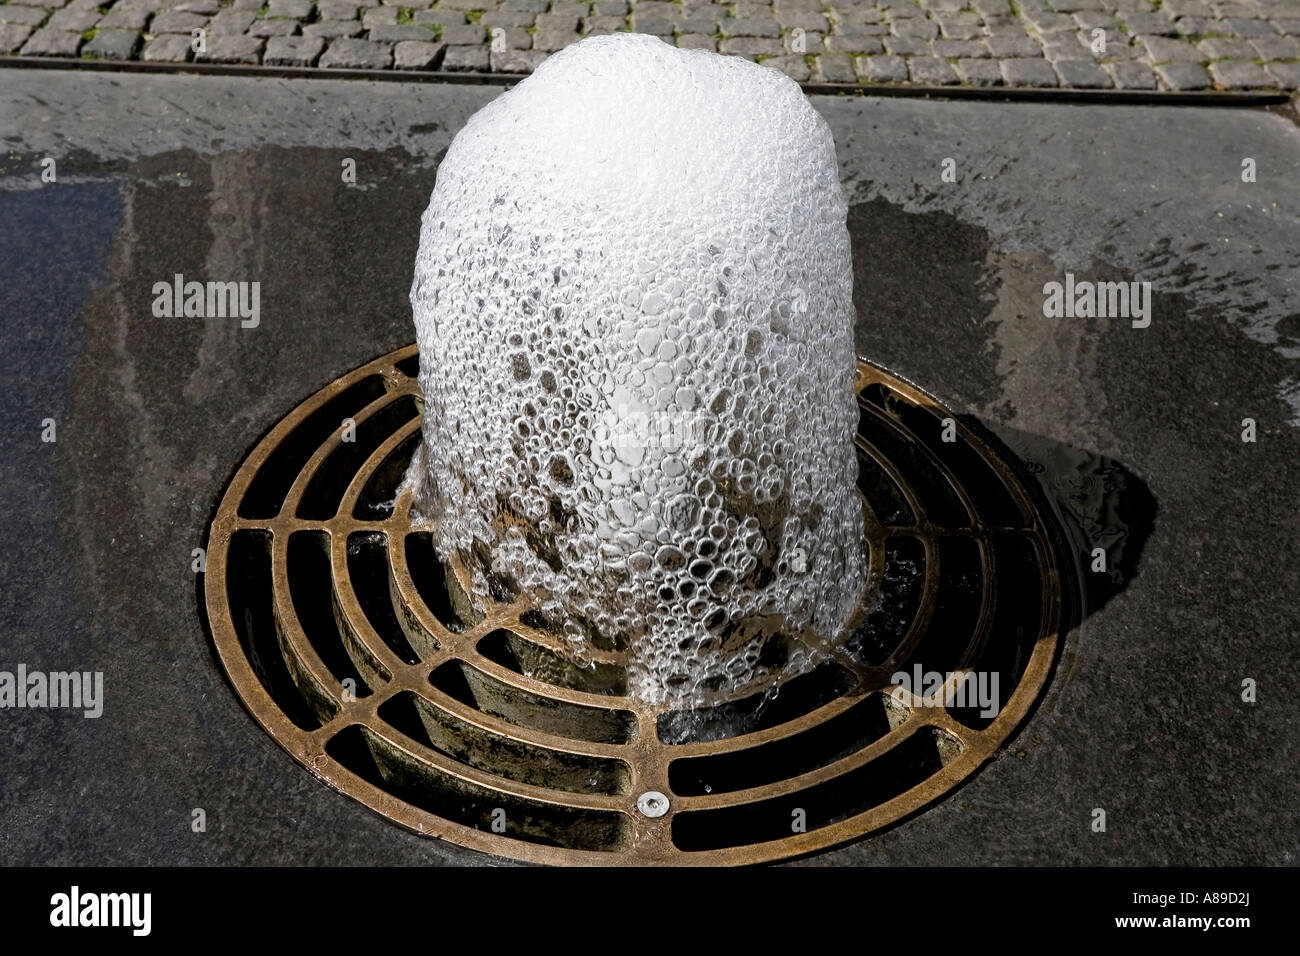 Elisenbrunnen, bulle d'eau minérale, Aachen, NRW, Allemagne Banque D'Images